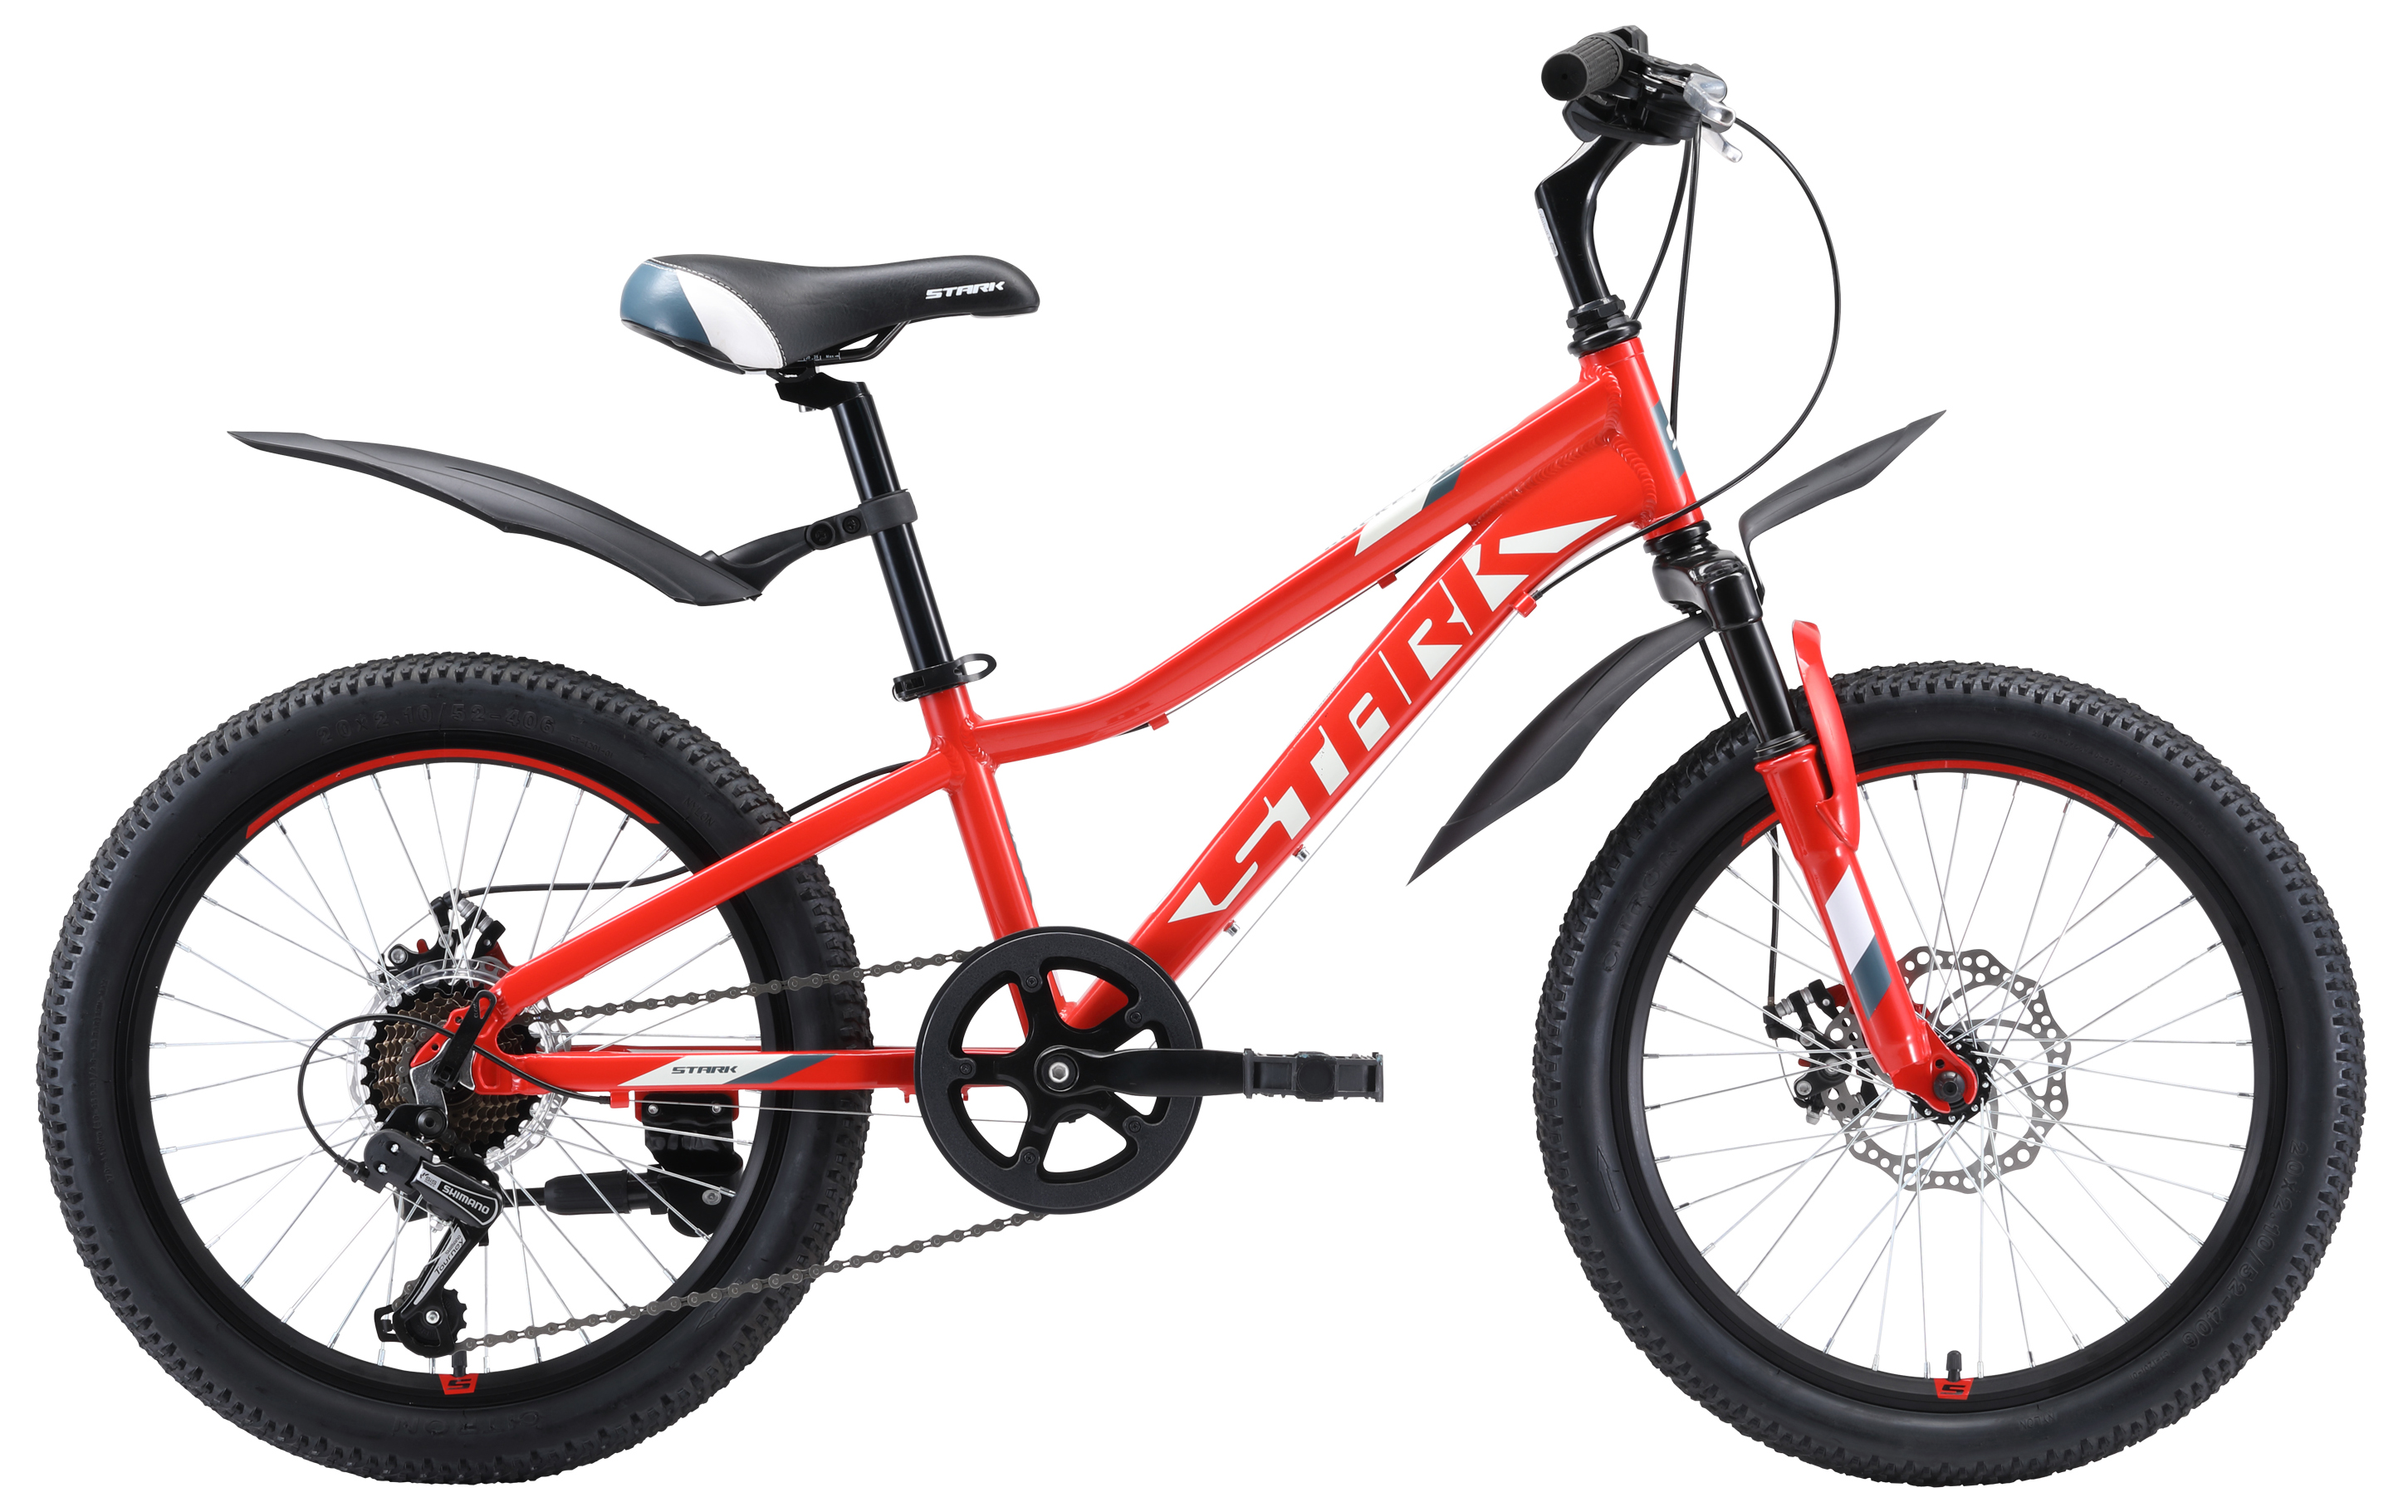  Отзывы о Детском велосипеде Stark Rocket 20.1 D 2020